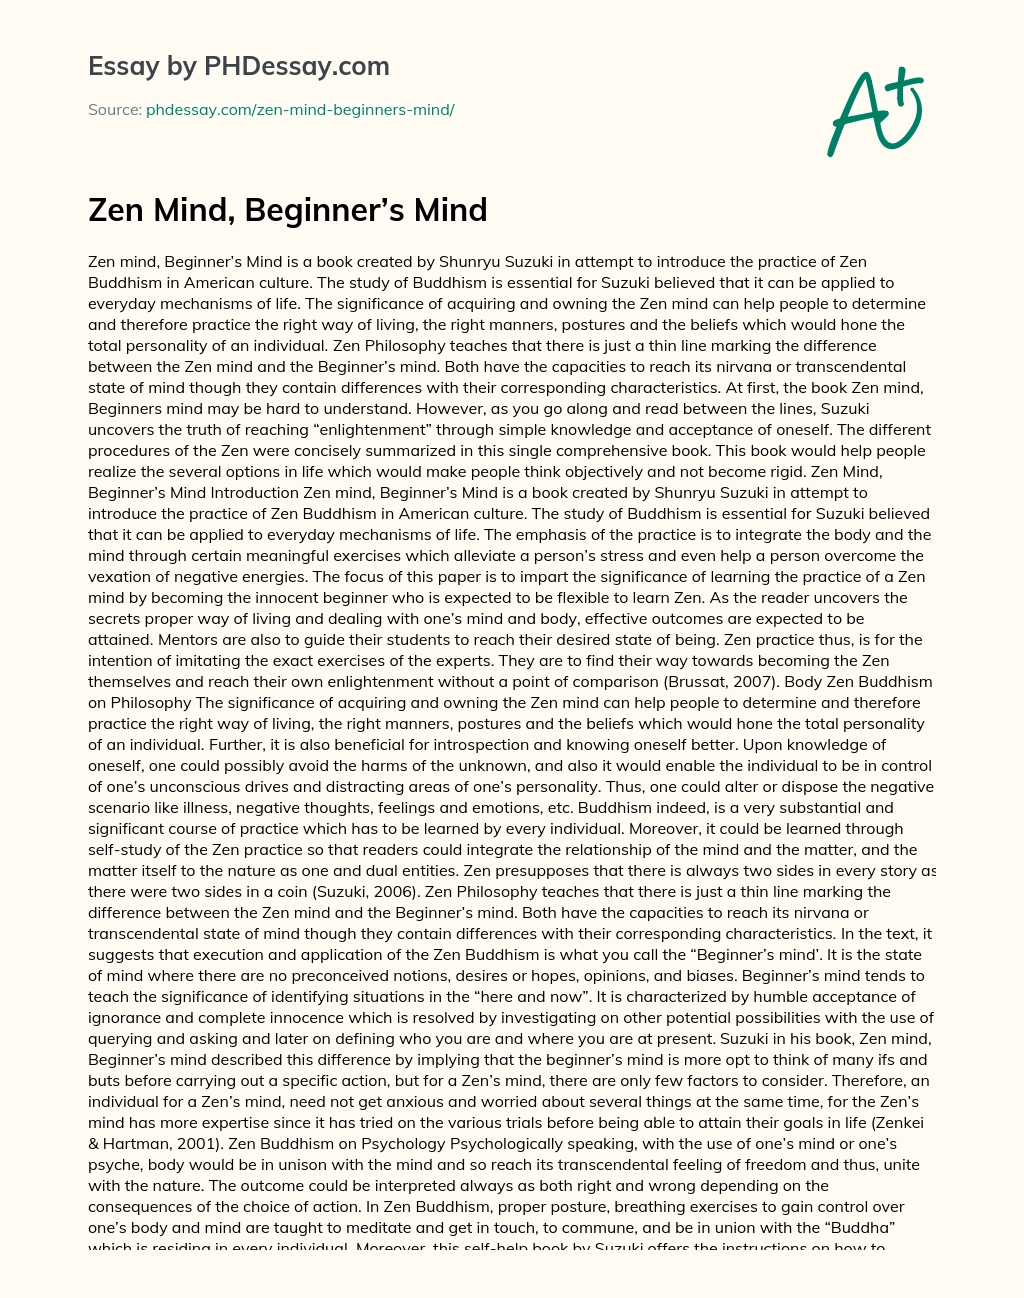 Zen Mind, Beginner’s Mind essay